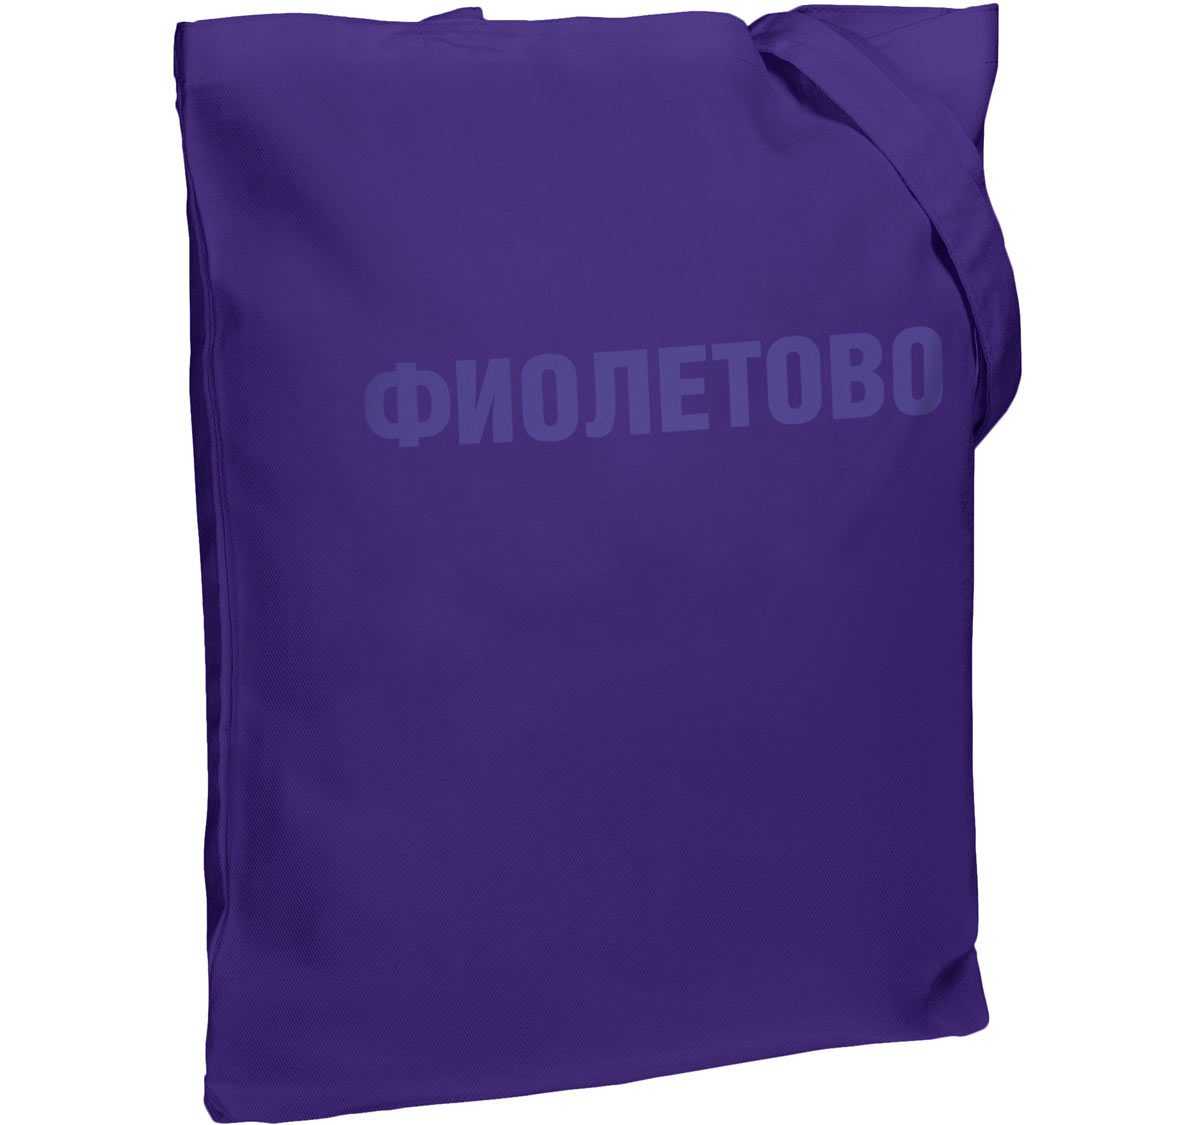 Холщовая сумка «Фиолетово», фиолетовая